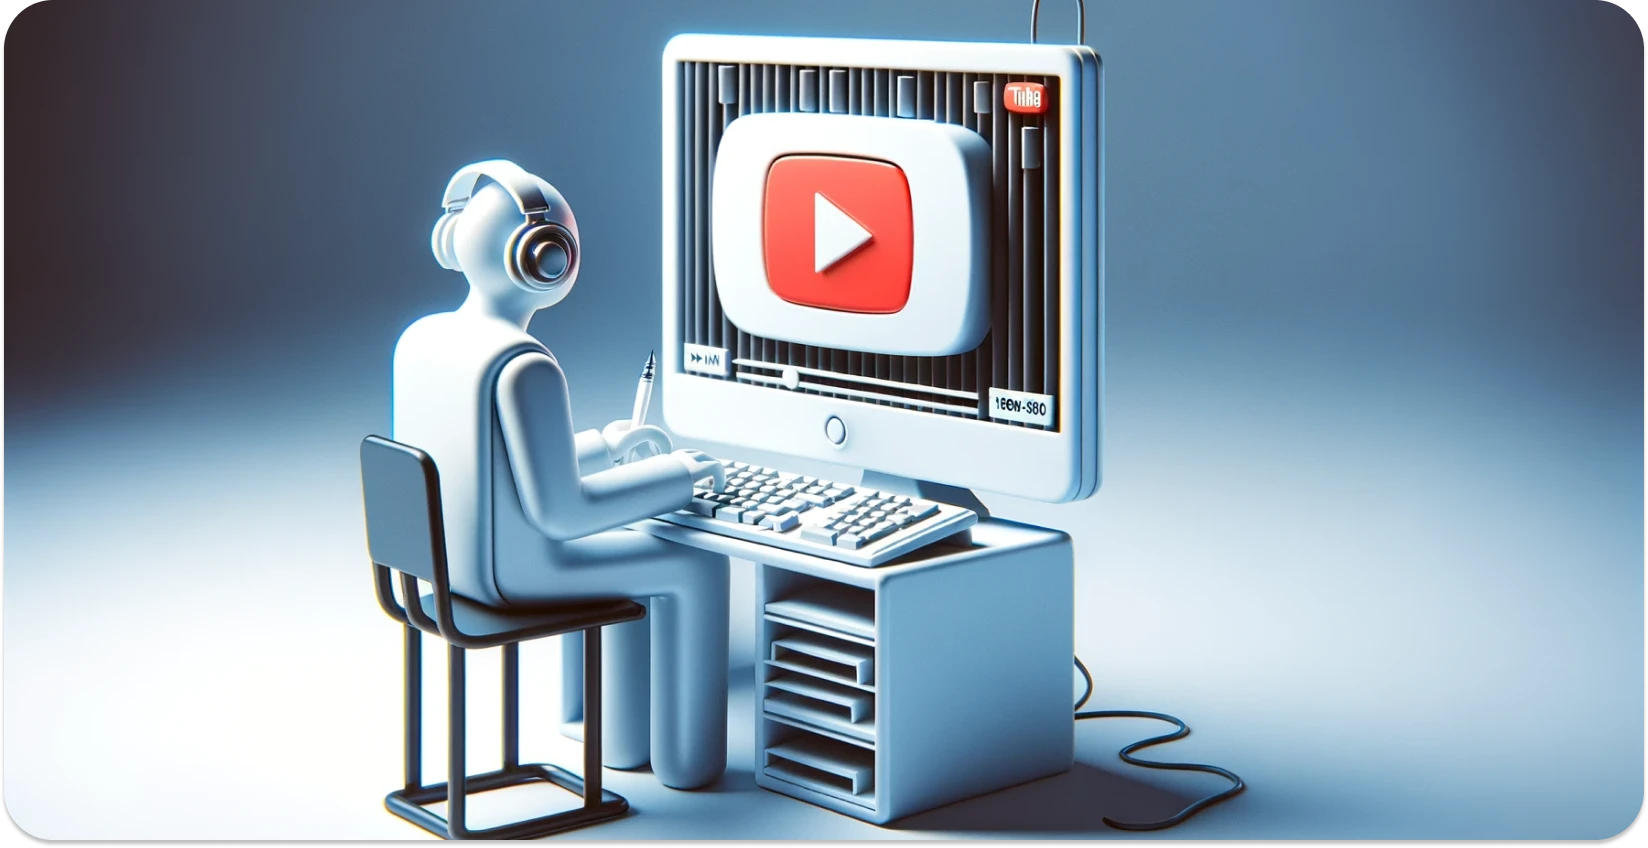 Stilizēta ilustrācija personai, kas izmanto datoru ar YouTube saskarni, koncentrējoties uz transkripciju.